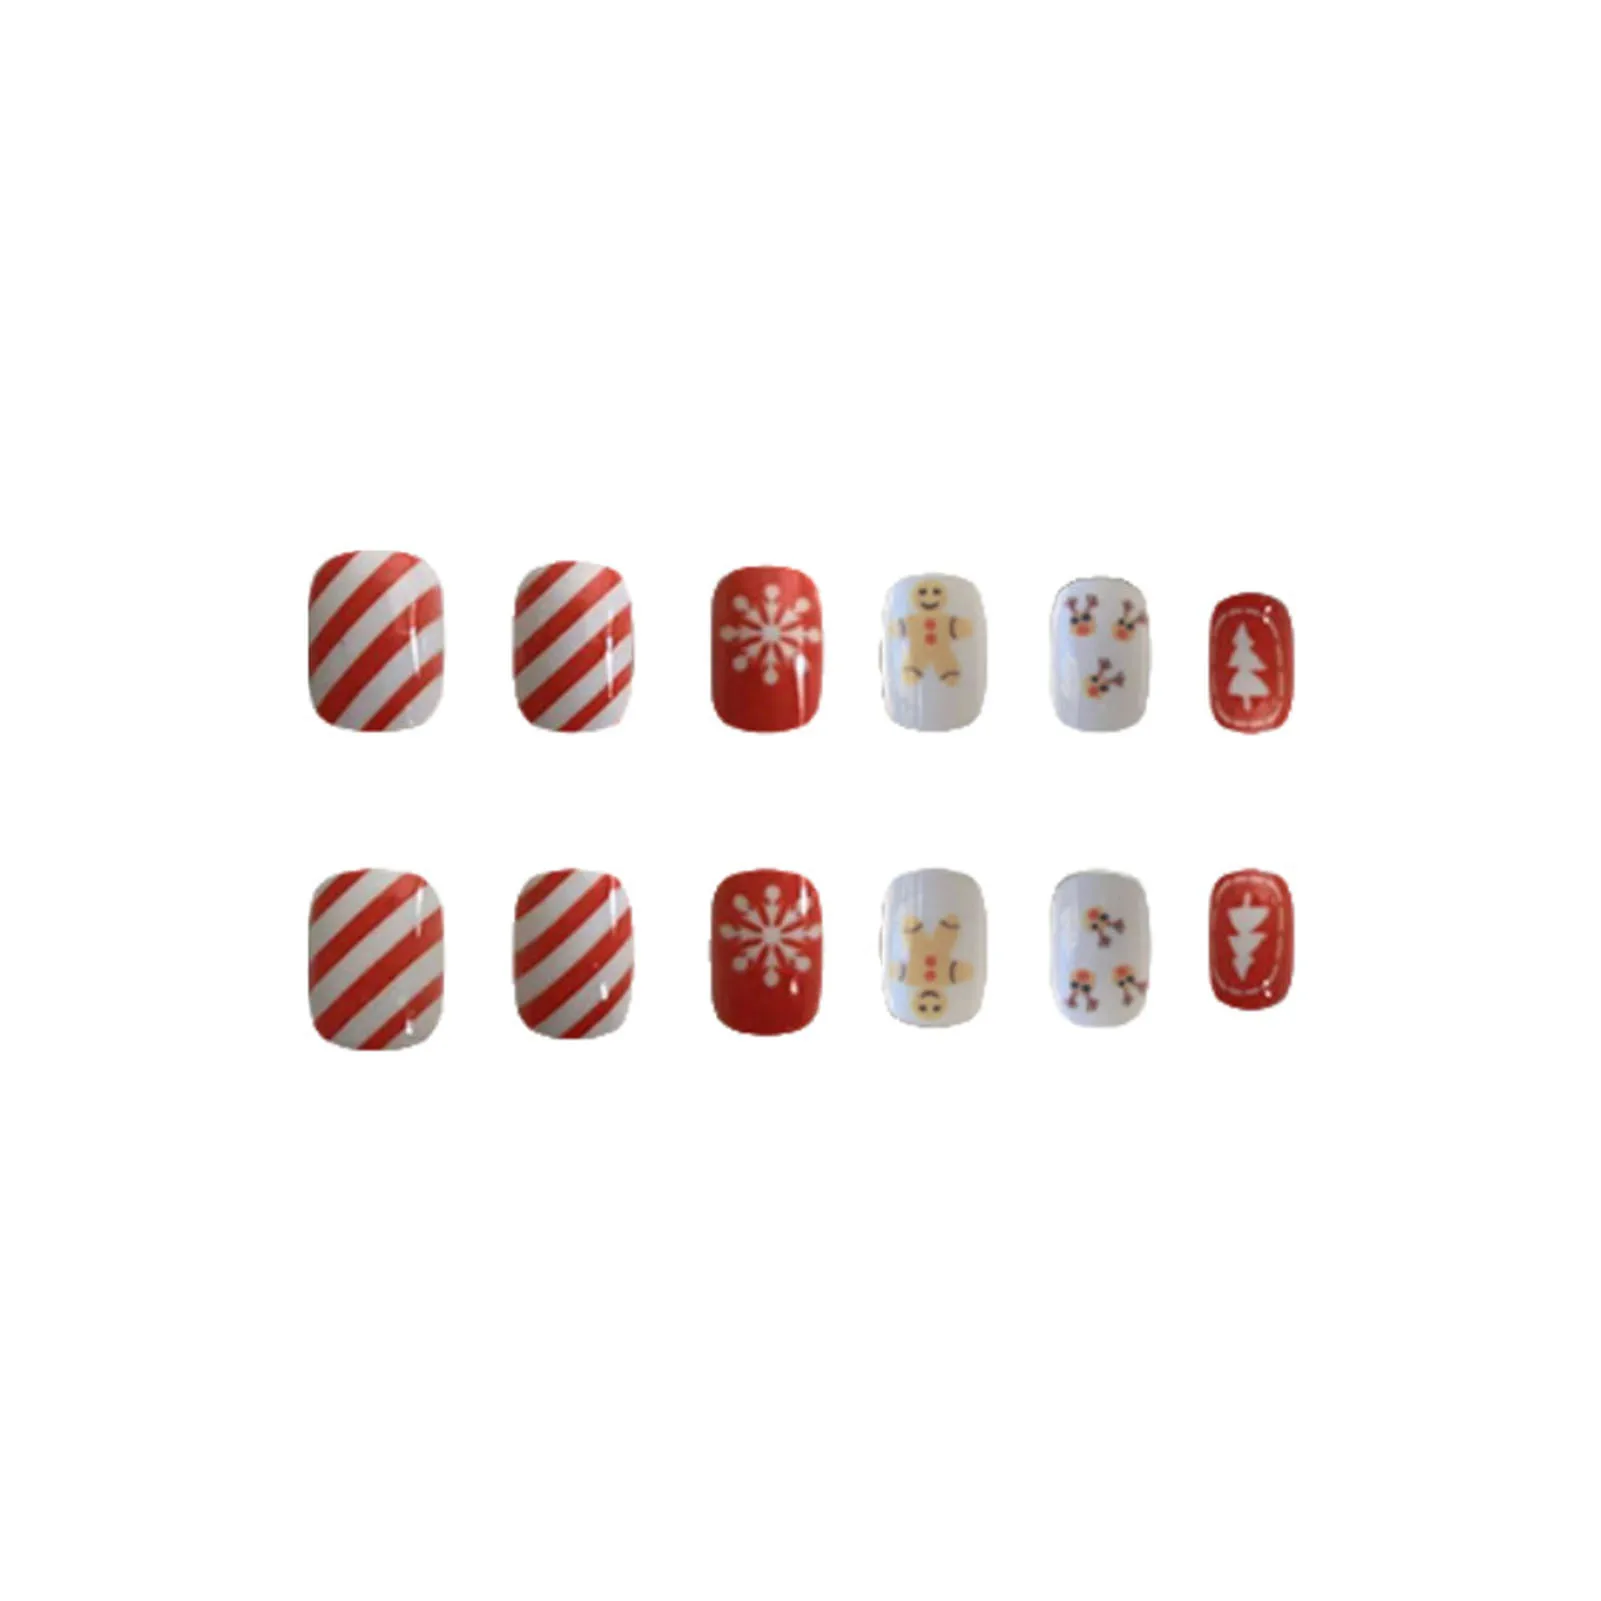 Рождественские красно-белые накладные ногти с принтом в виде снежинок, Очаровательные, удобные в носке, Маникюрные ногти для покупок, путешествий, свиданий